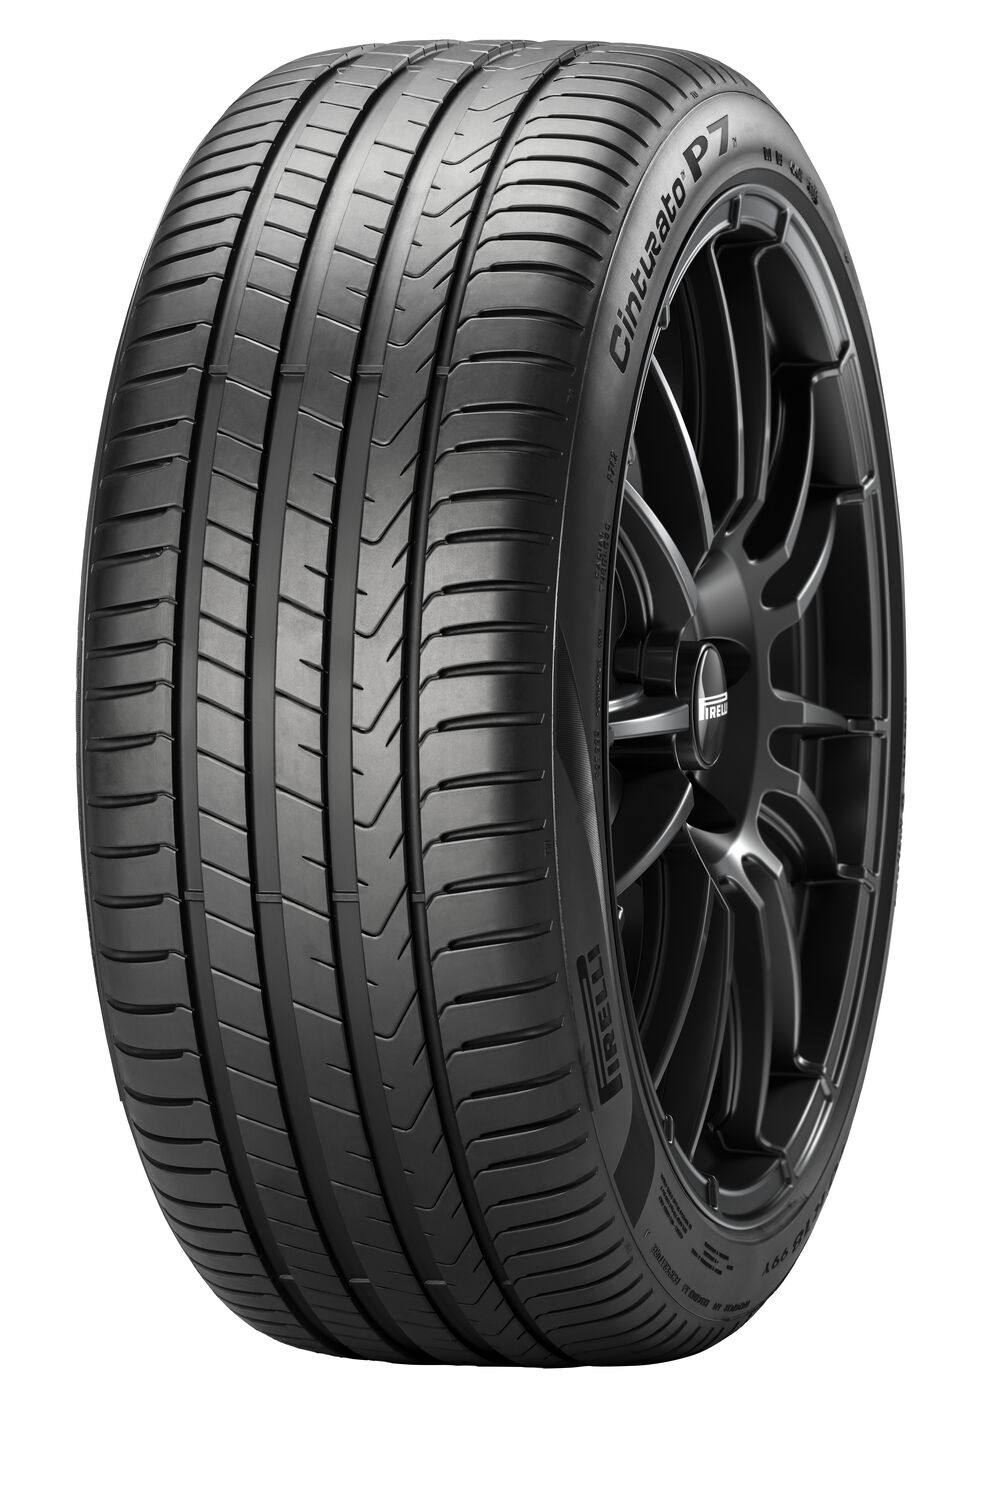 Gomme Nuove Pirelli 245/45 R18 100Y Cinturato P7 P7C2 XL pneumatici nuovi Estivo